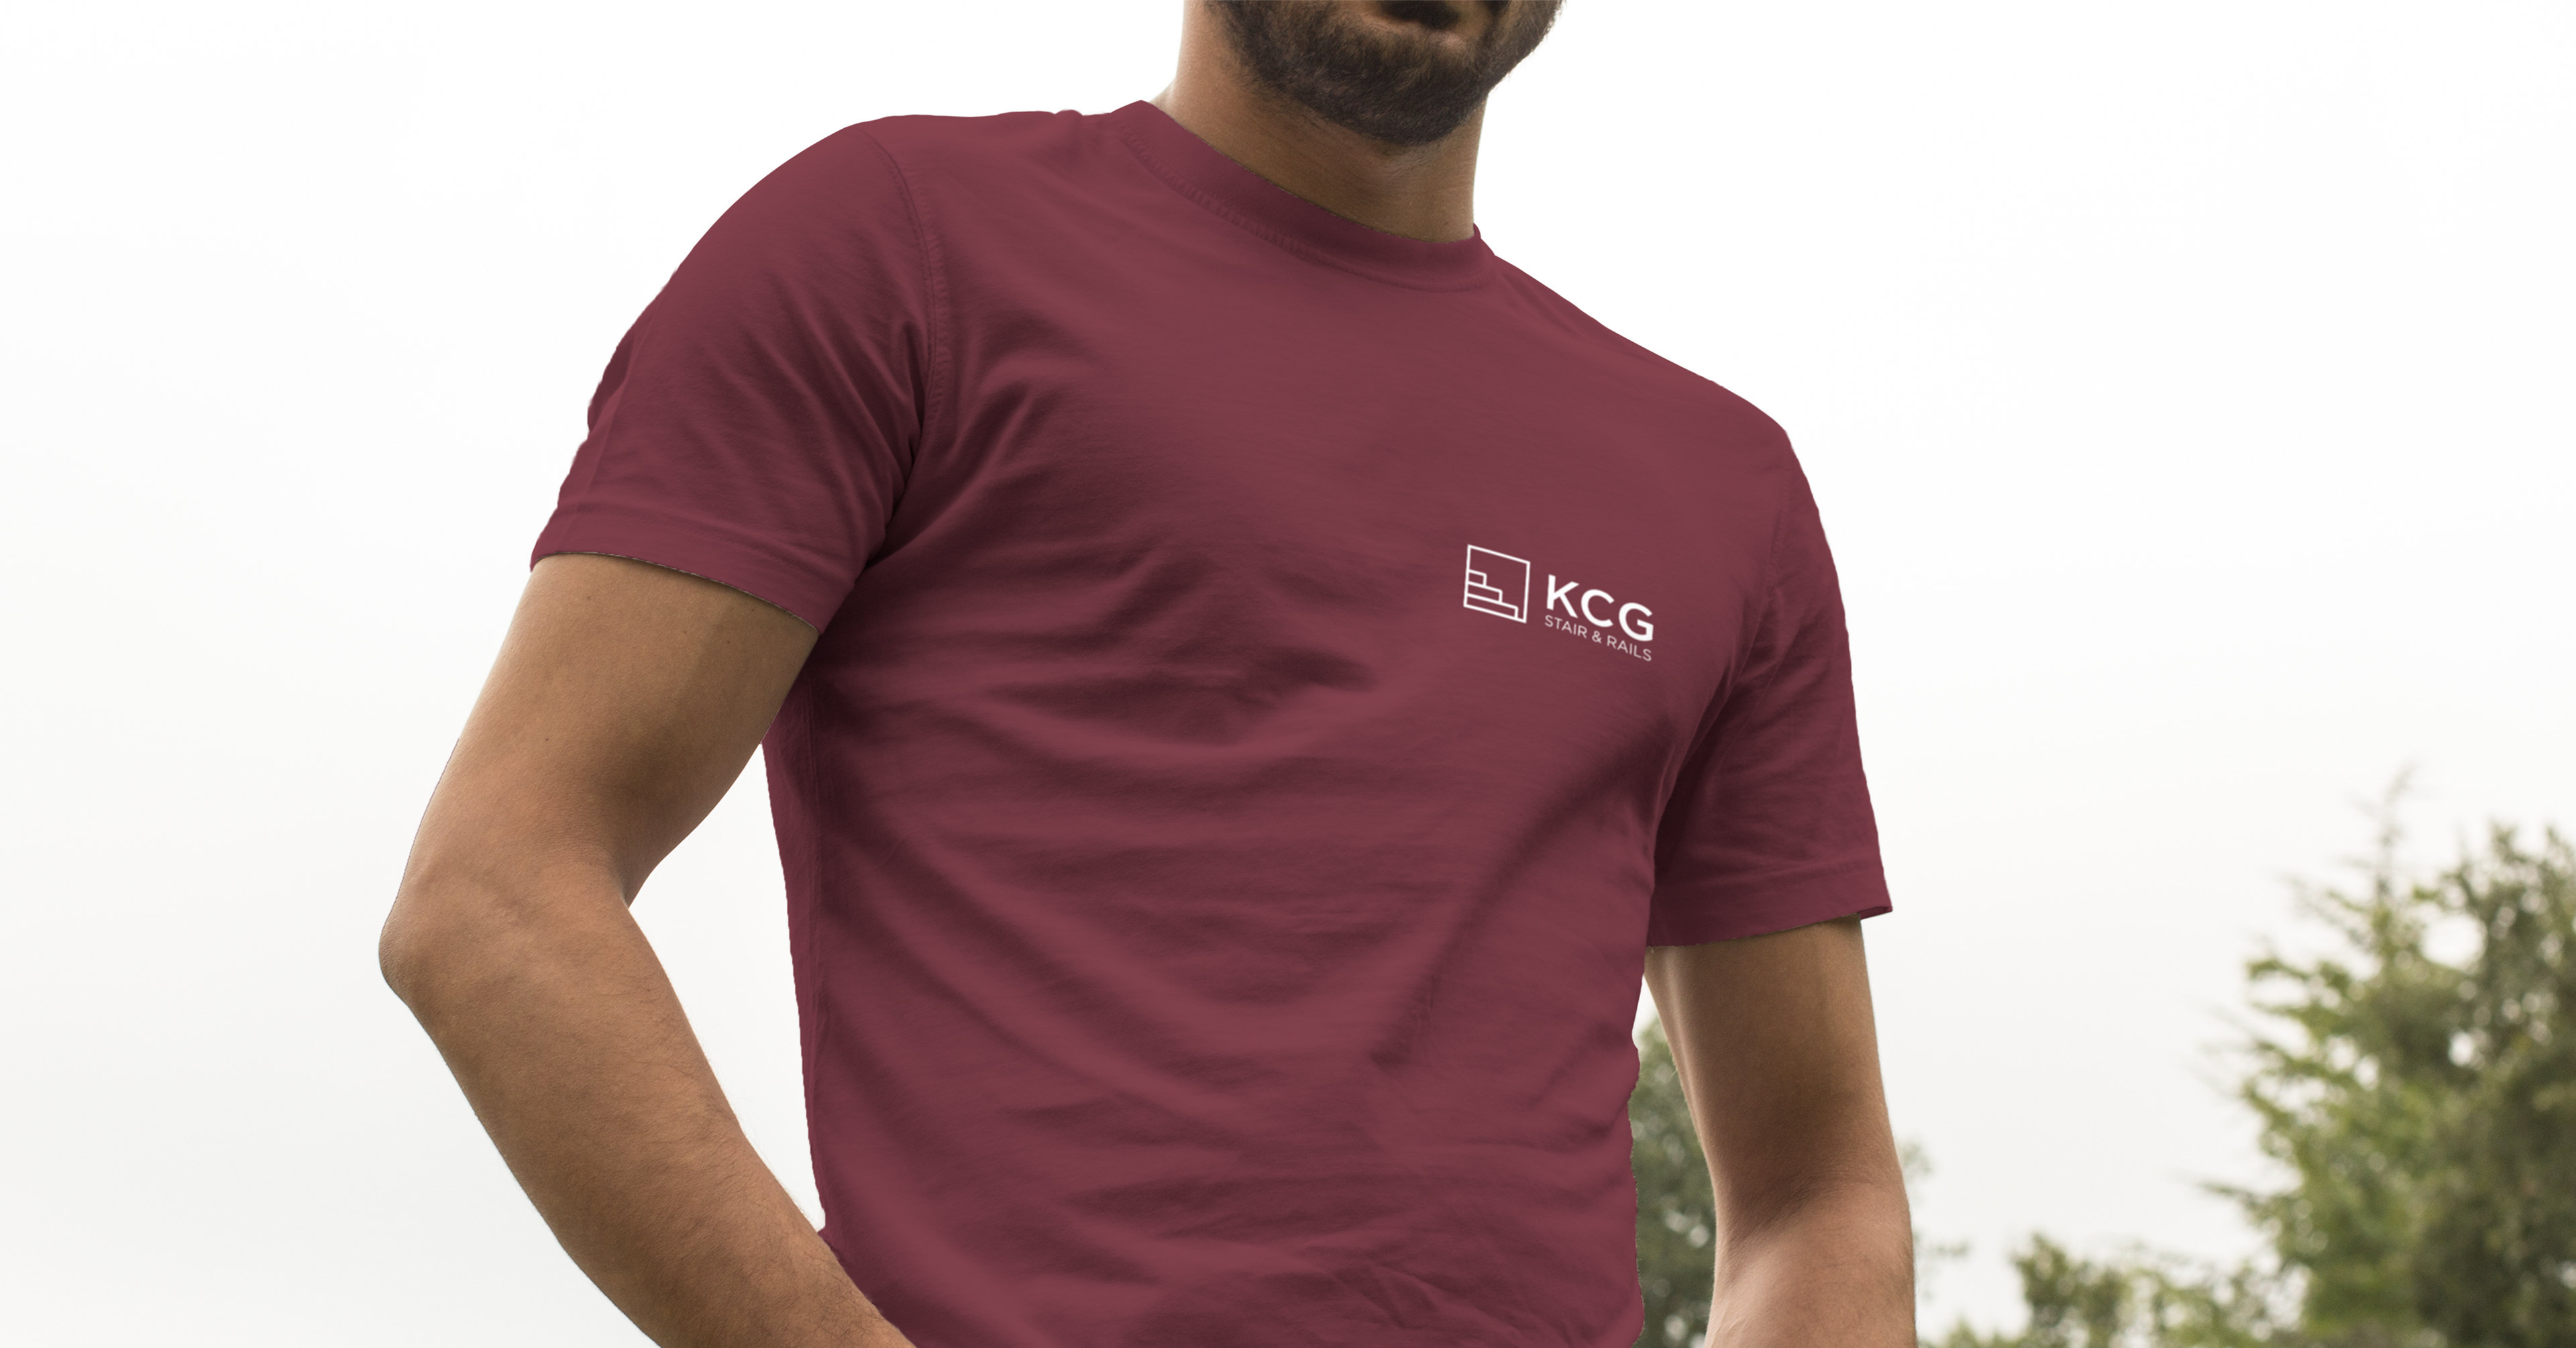 KCG Shirt - iDesign Branding